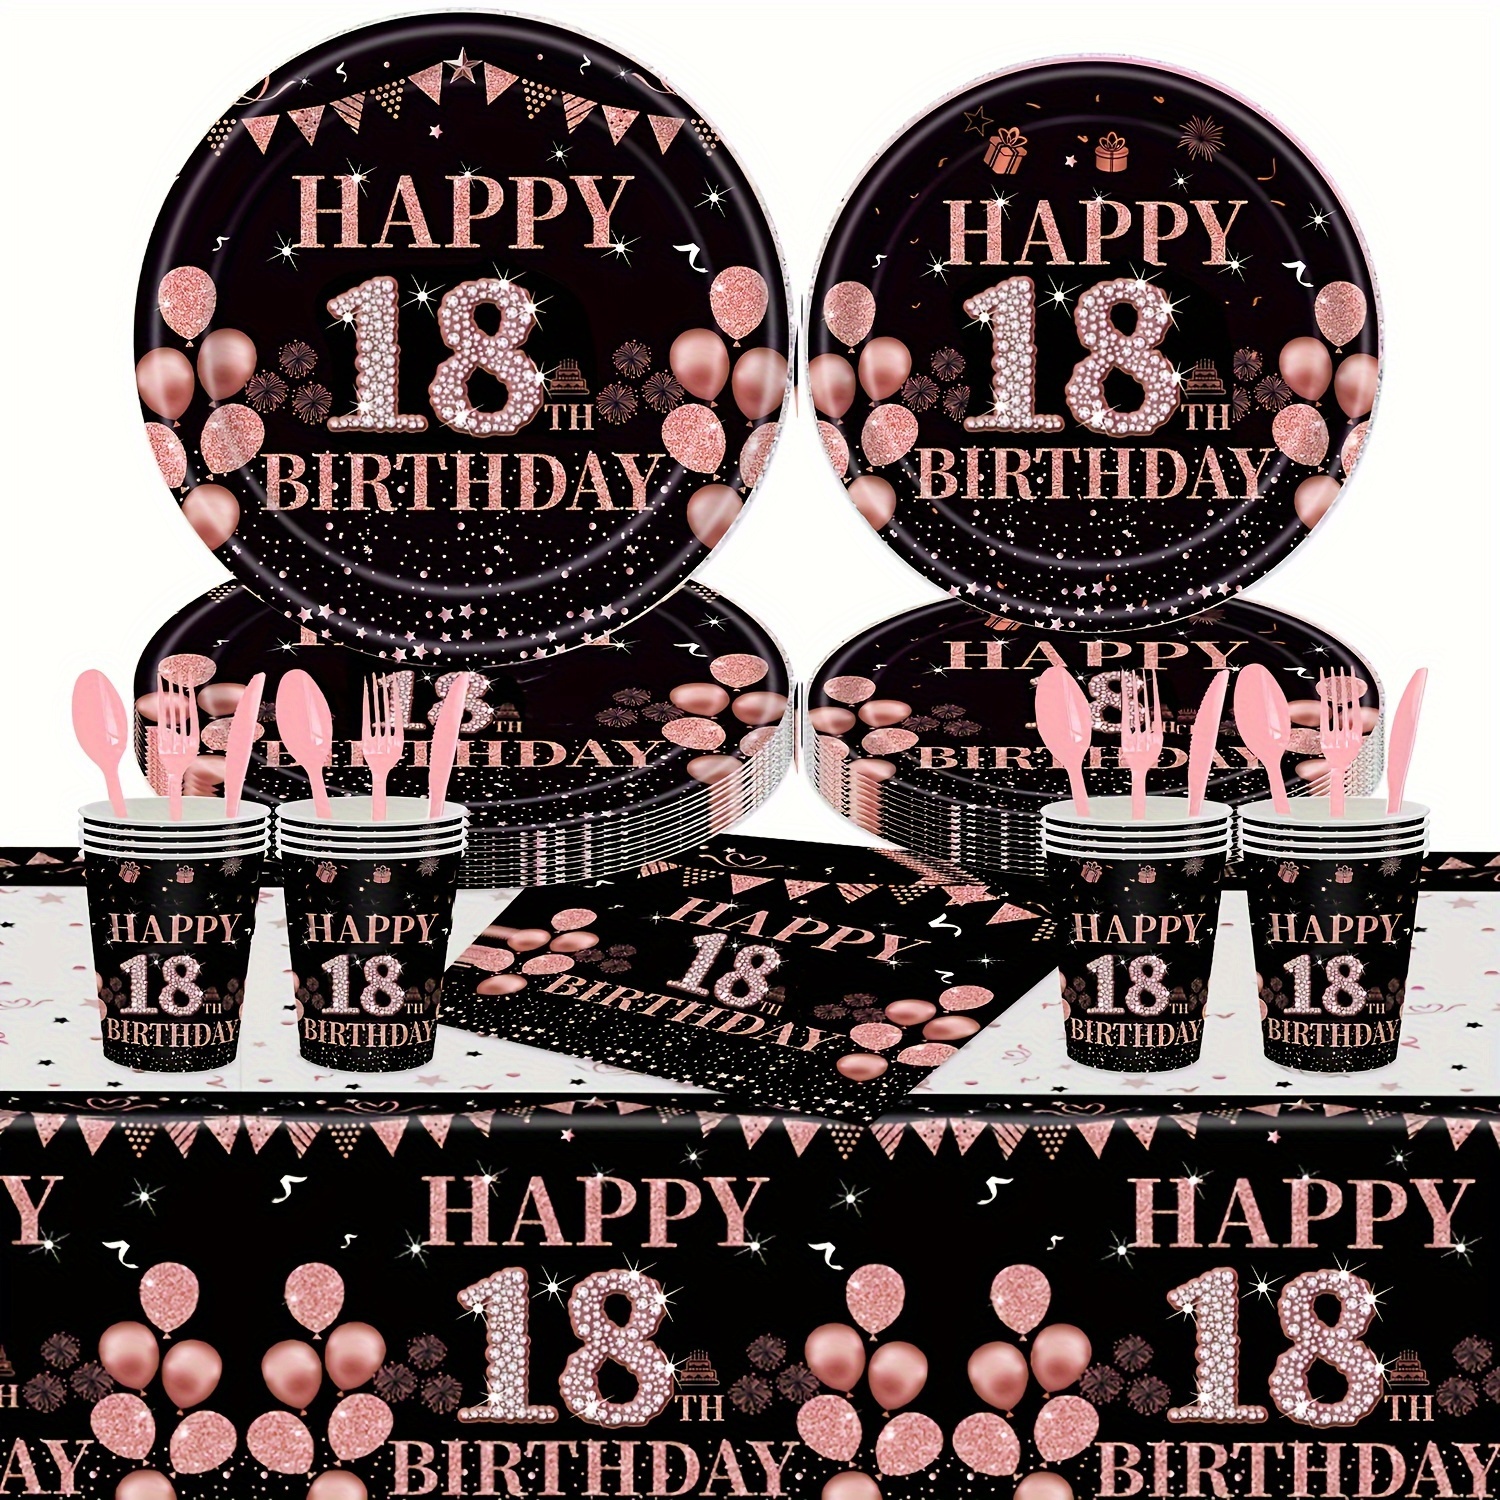 La décoration anniversaire 18 ans - découvrez vos options  Decoracion de  cumpleaños, Foto de cumpleaños, Diseño de cumpleaños